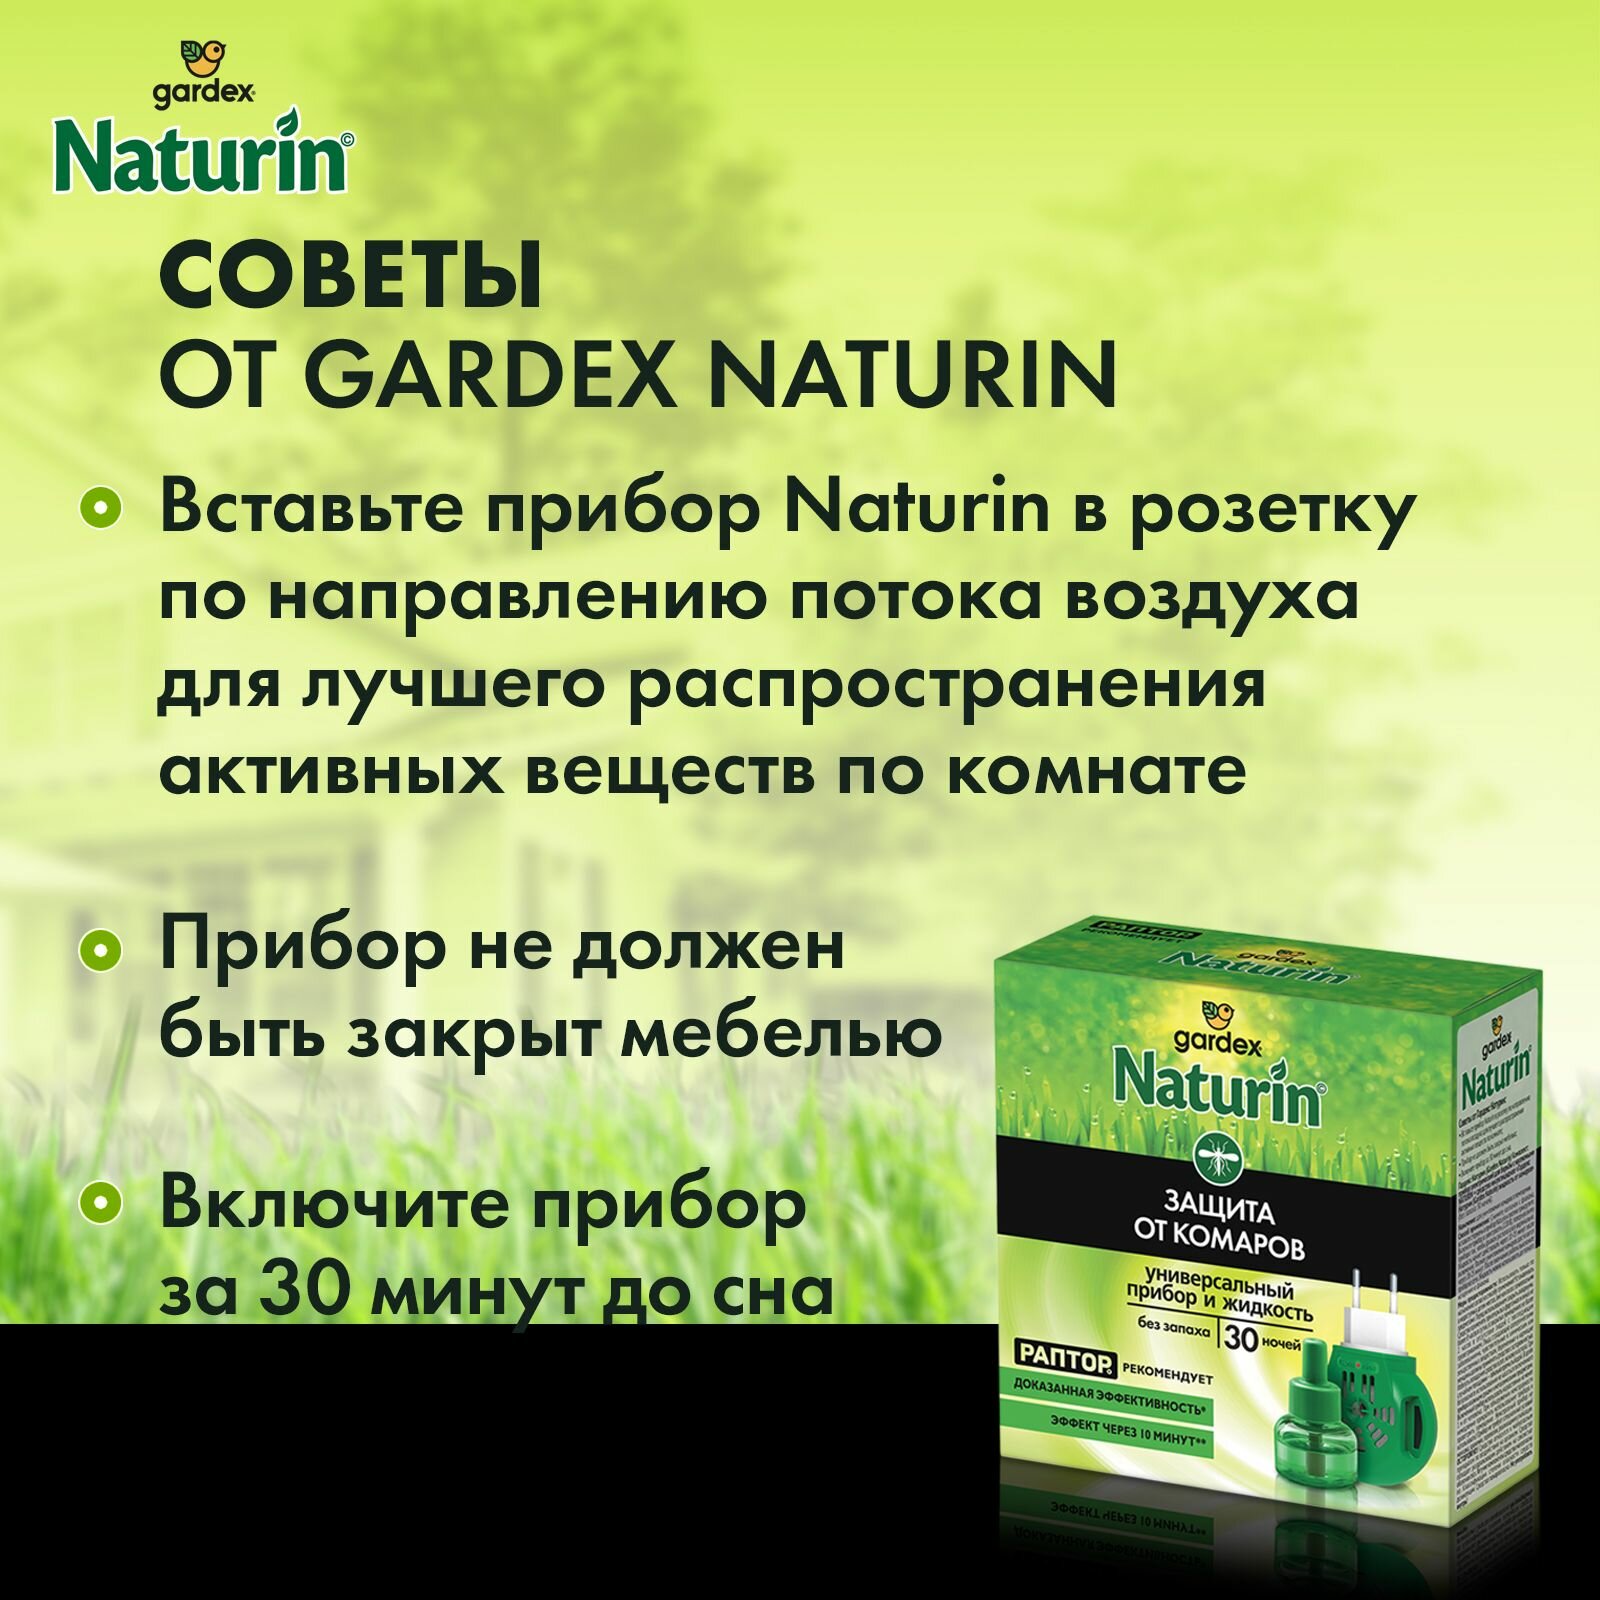 Комплект Gardex Naturin: универсальный прибор и жидкость от комаров, без запаха, 30 ночей - фото №6